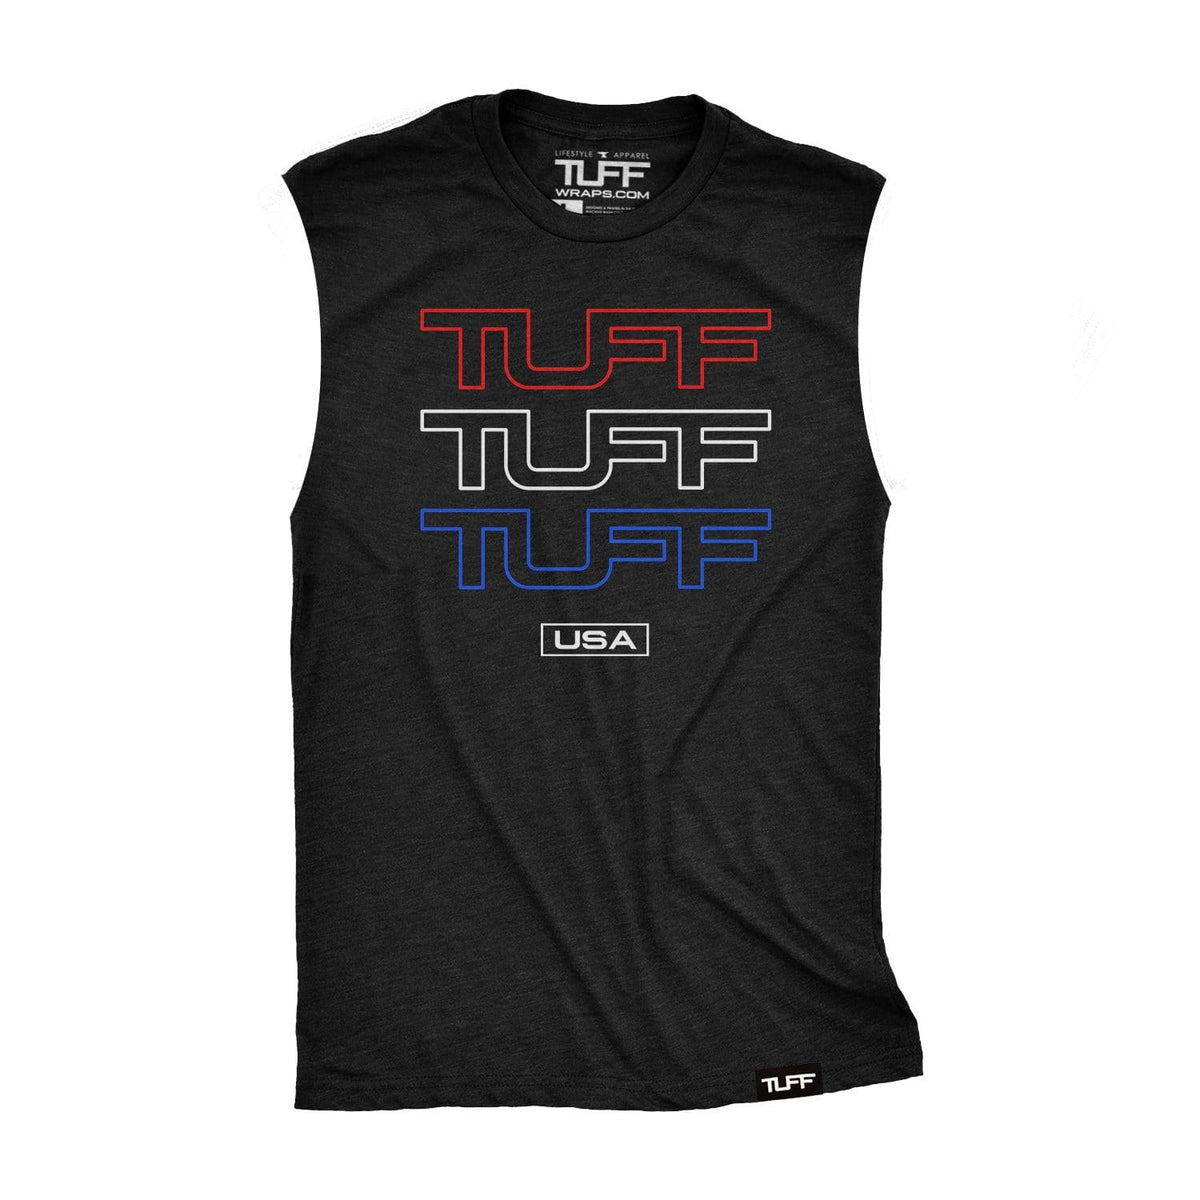 Triple TUFF USA Raw Edge Muscle Tank S / Black TuffWraps.com